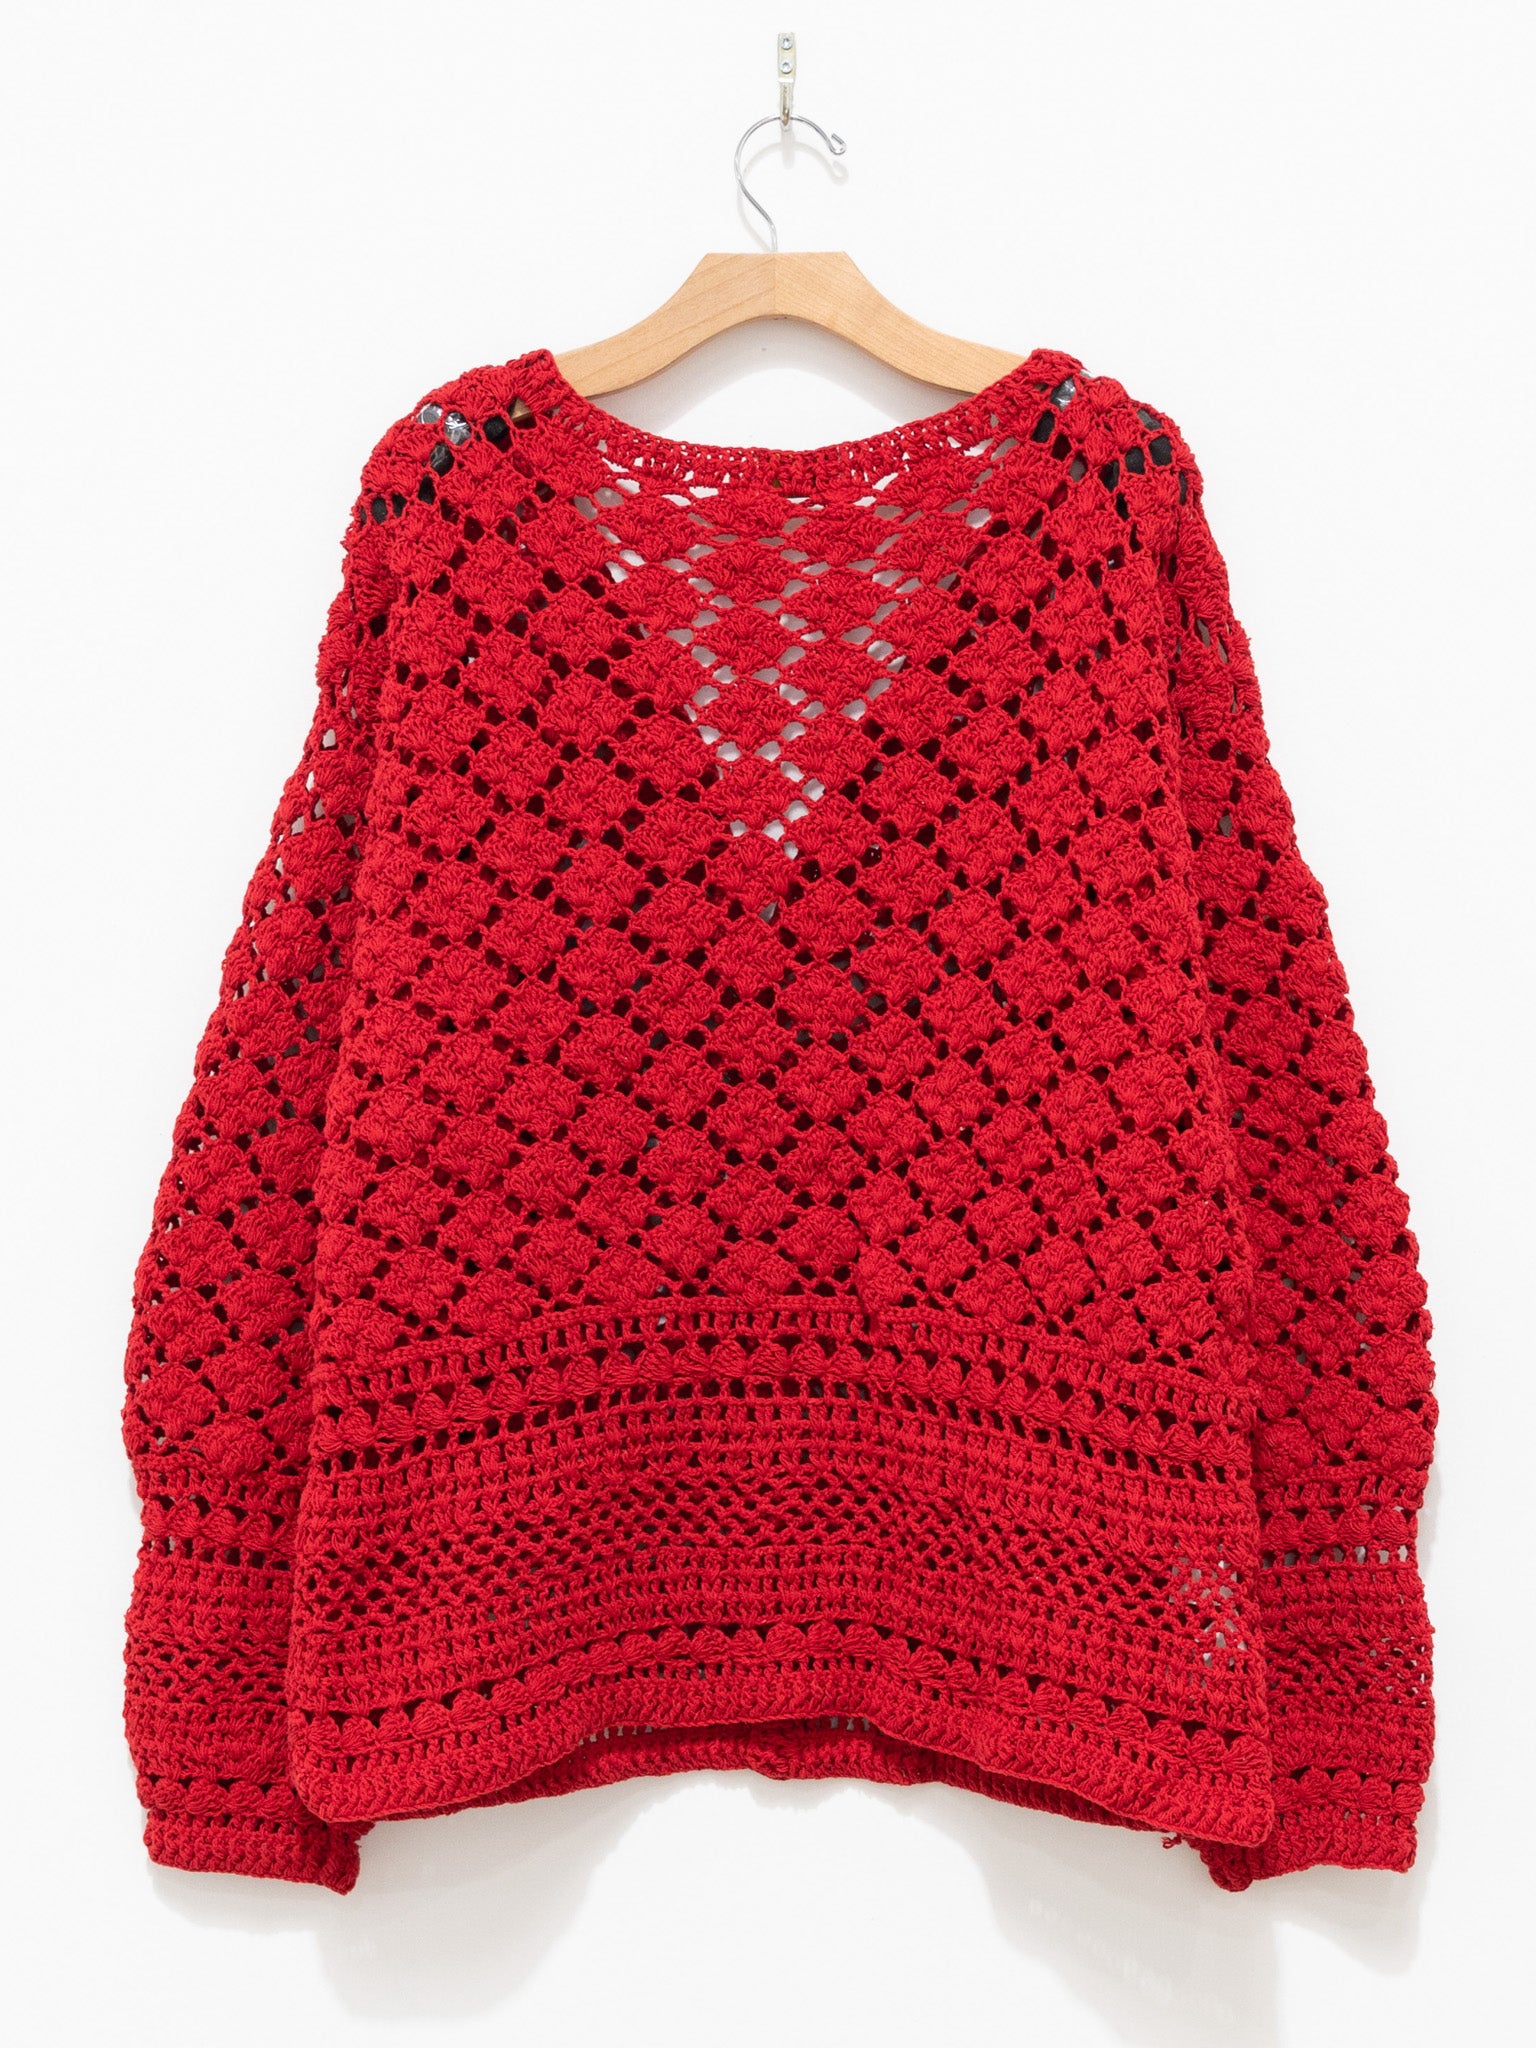 MacMahon Knitting Mills niche-